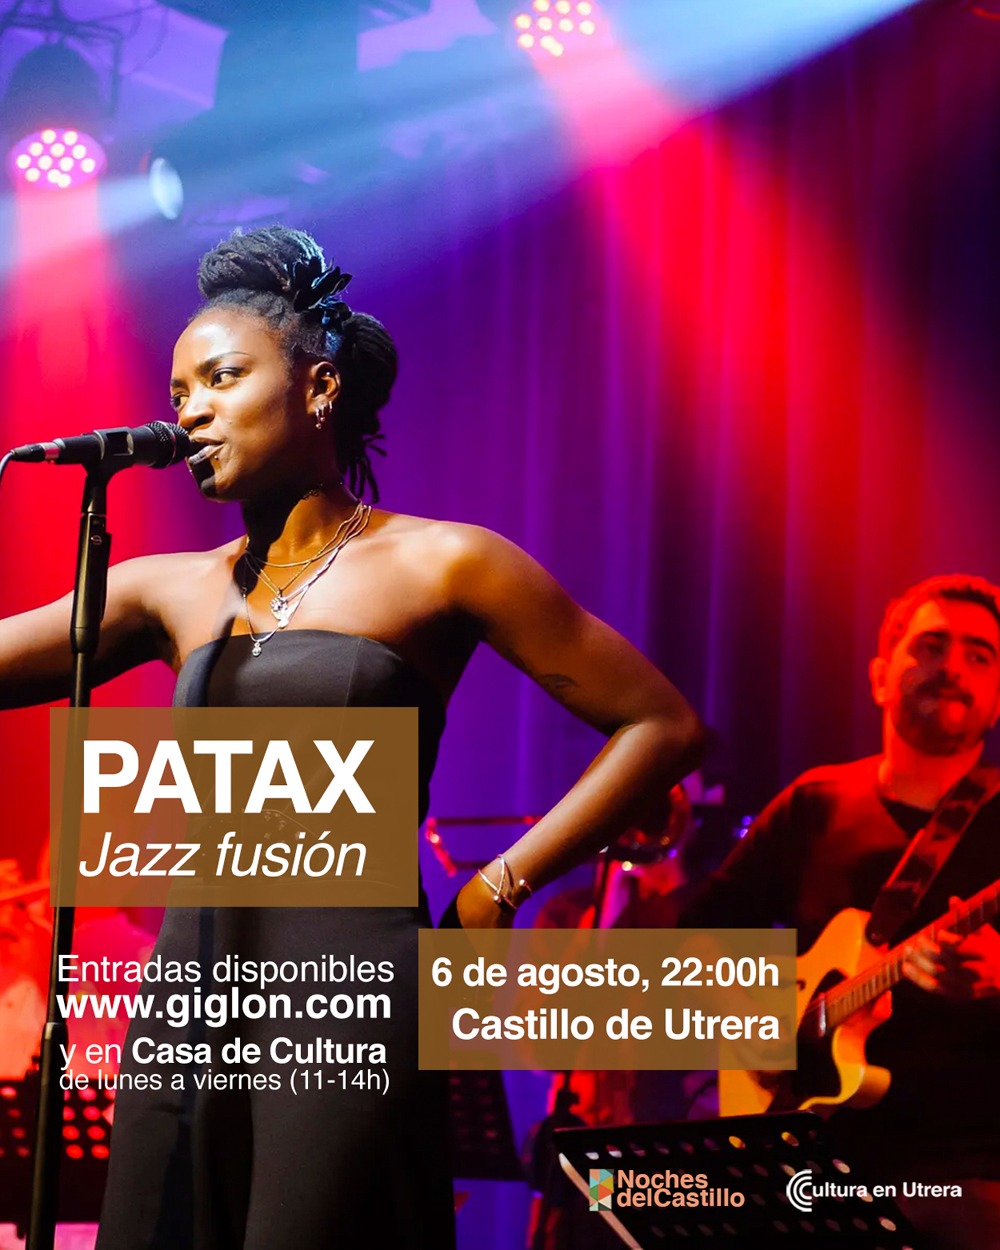 El flamenco, jazz, soul, funk y música afrocubana llegan a Utrera este 6 de agosto con Patax Fusión